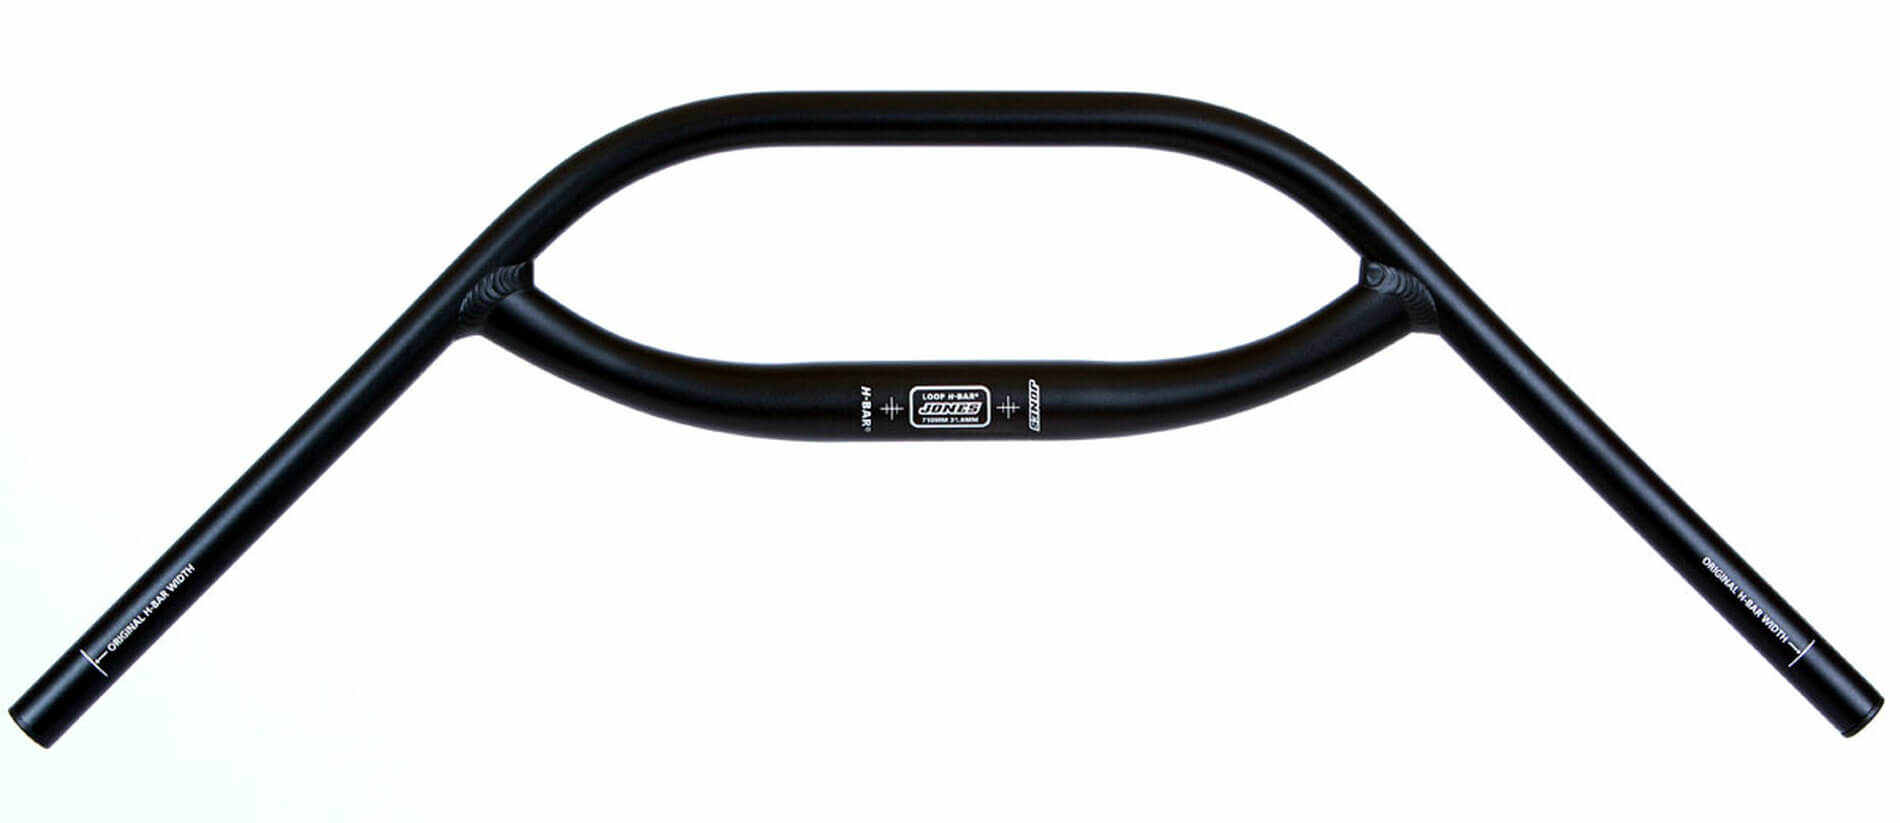 type of bicycle handlebars